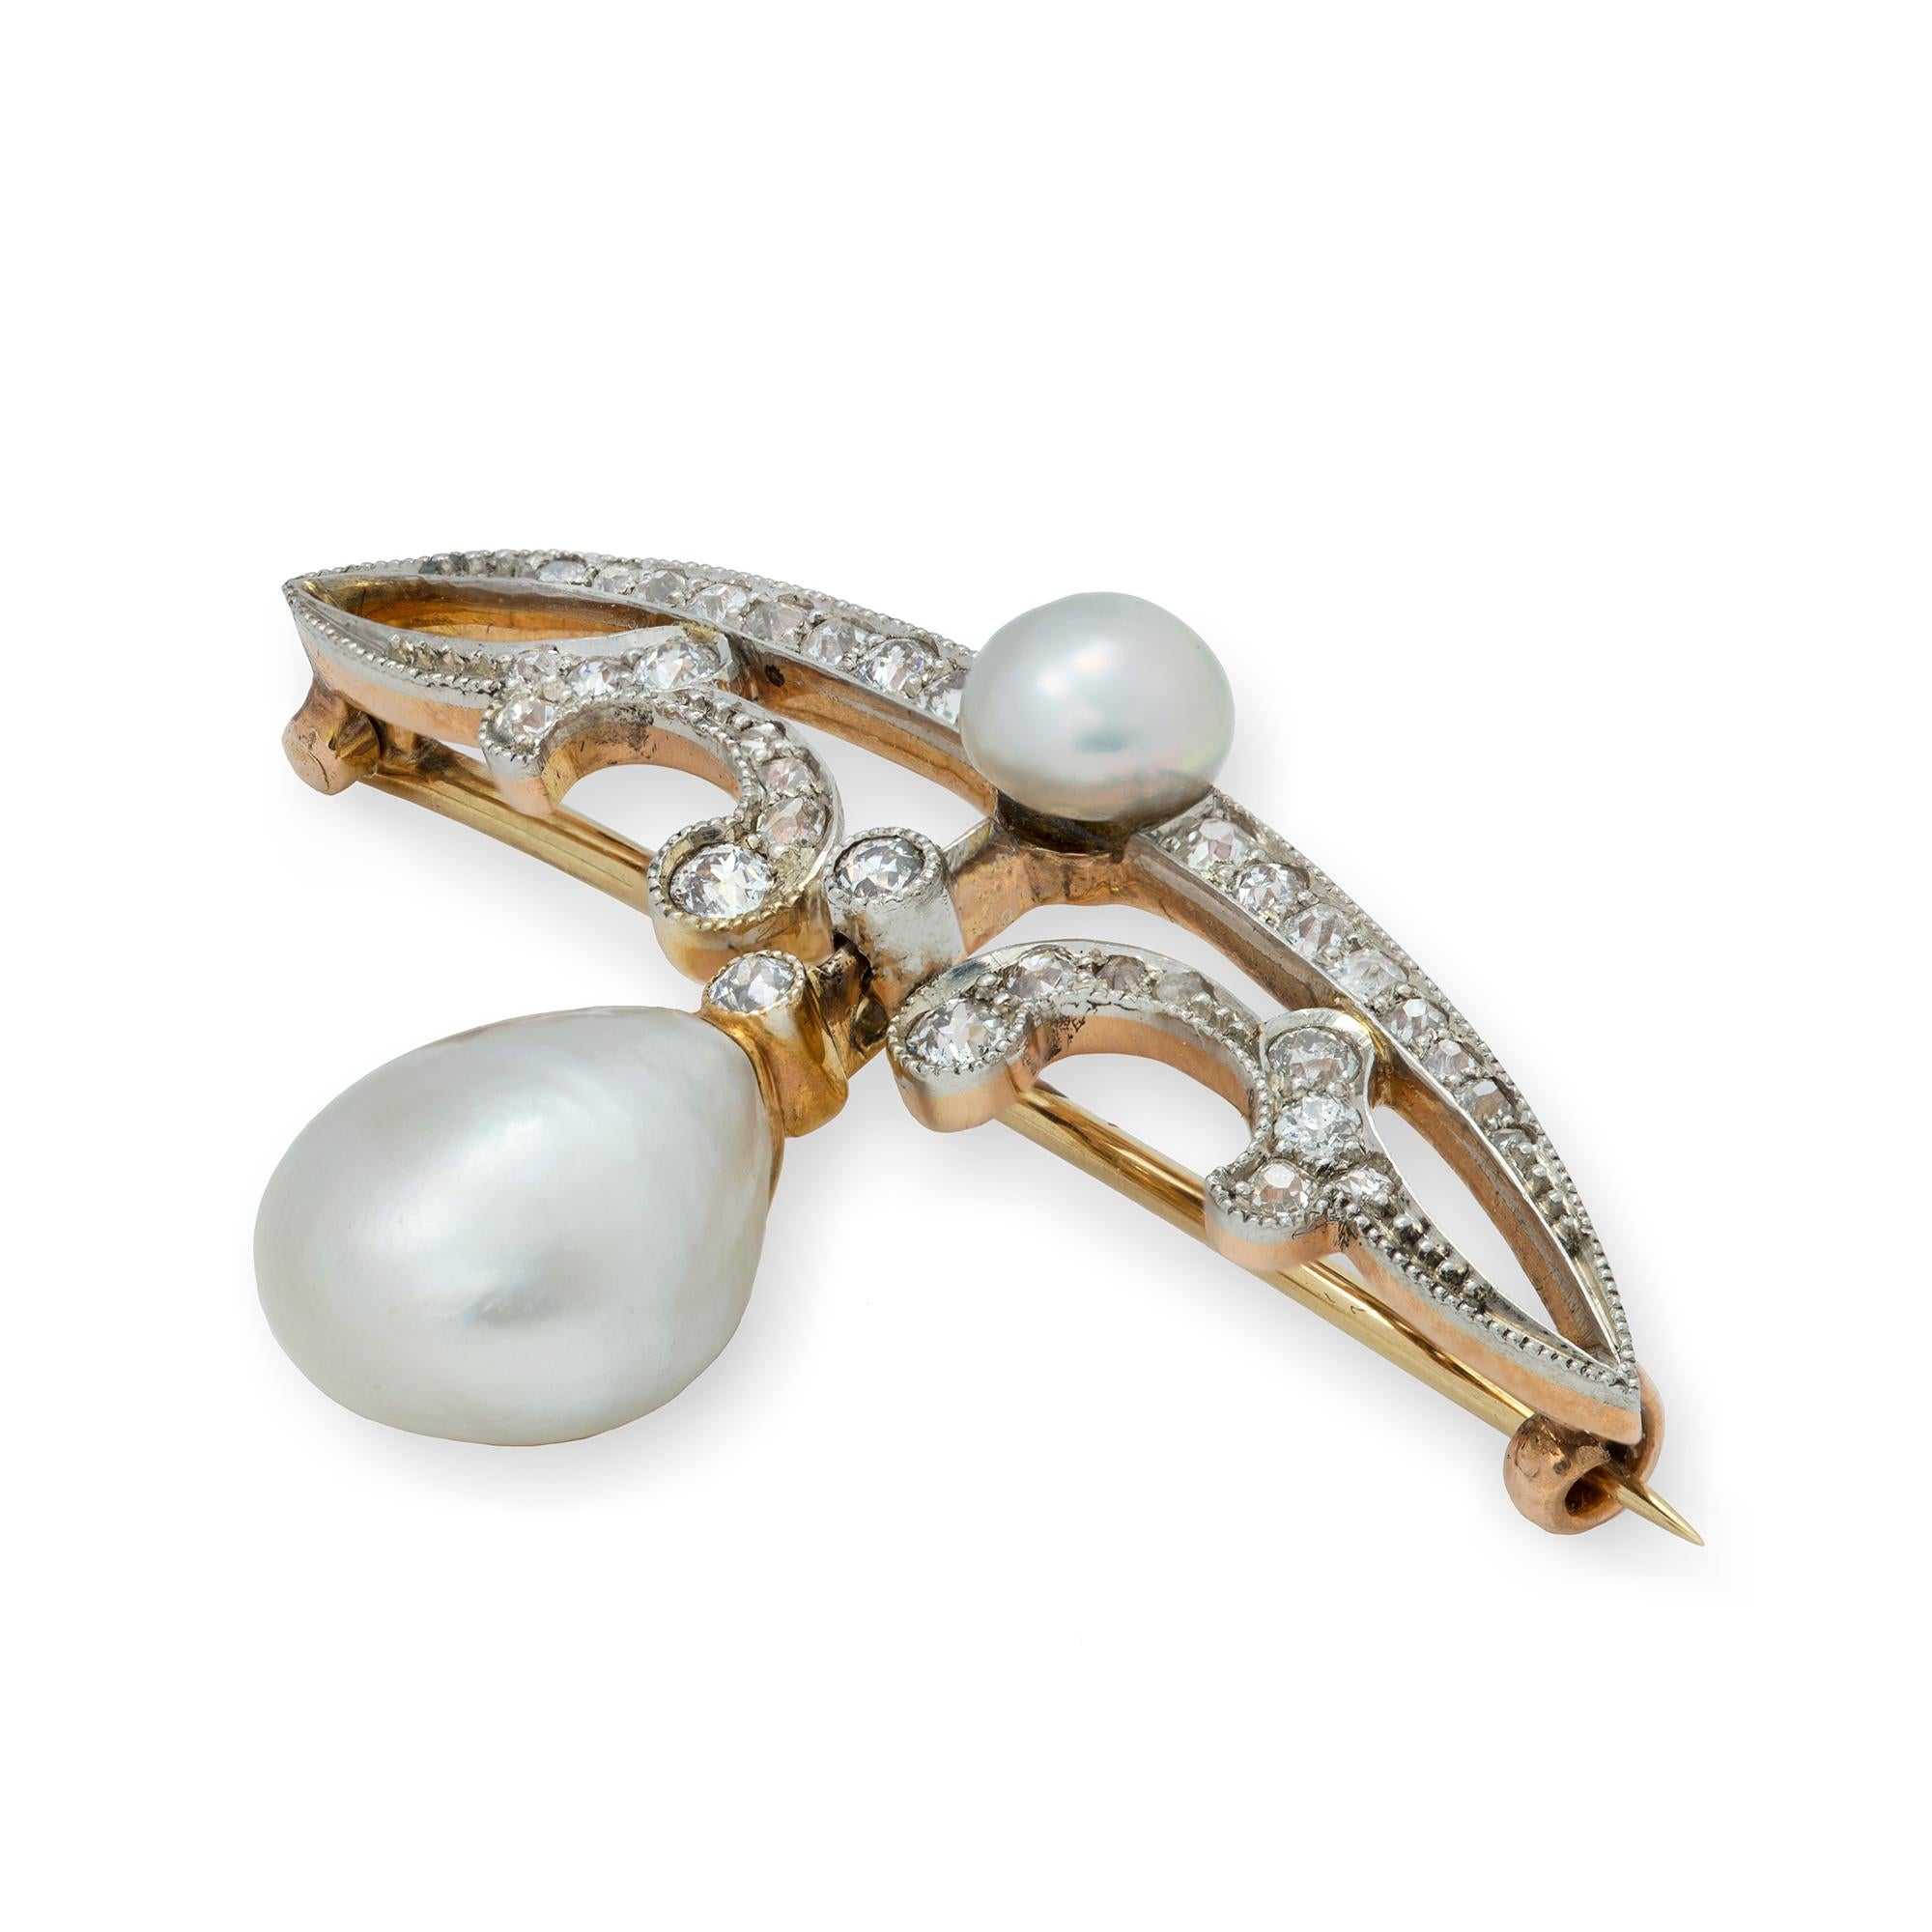 Broche édouardienne en perles naturelles et diamants, les deux perles naturelles étant accompagnées d'un numéro de certificat GCS.  déclarant que les perles sont naturelles et proviennent de l'eau de mer, la plus grosse perle étant suspendue à une